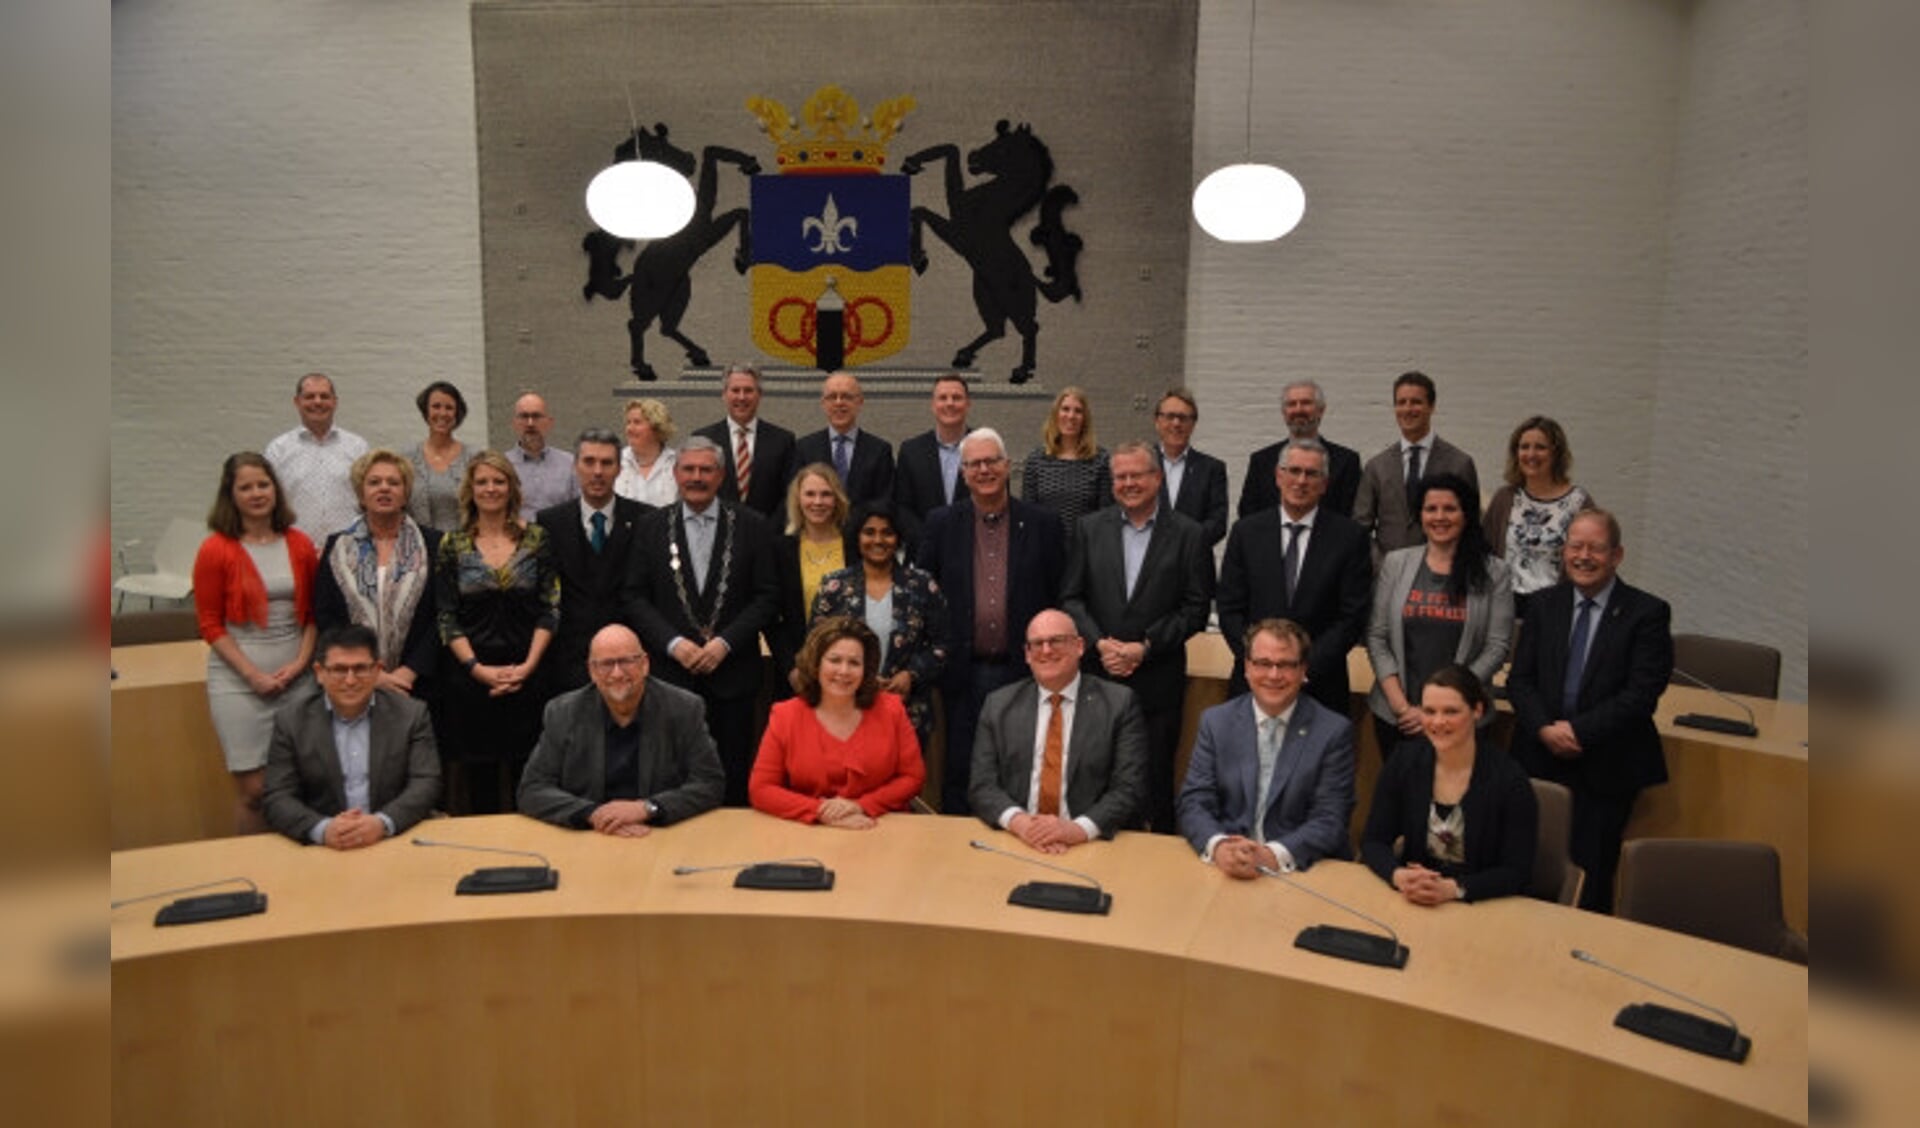  De gemeenteraad van Dronten.